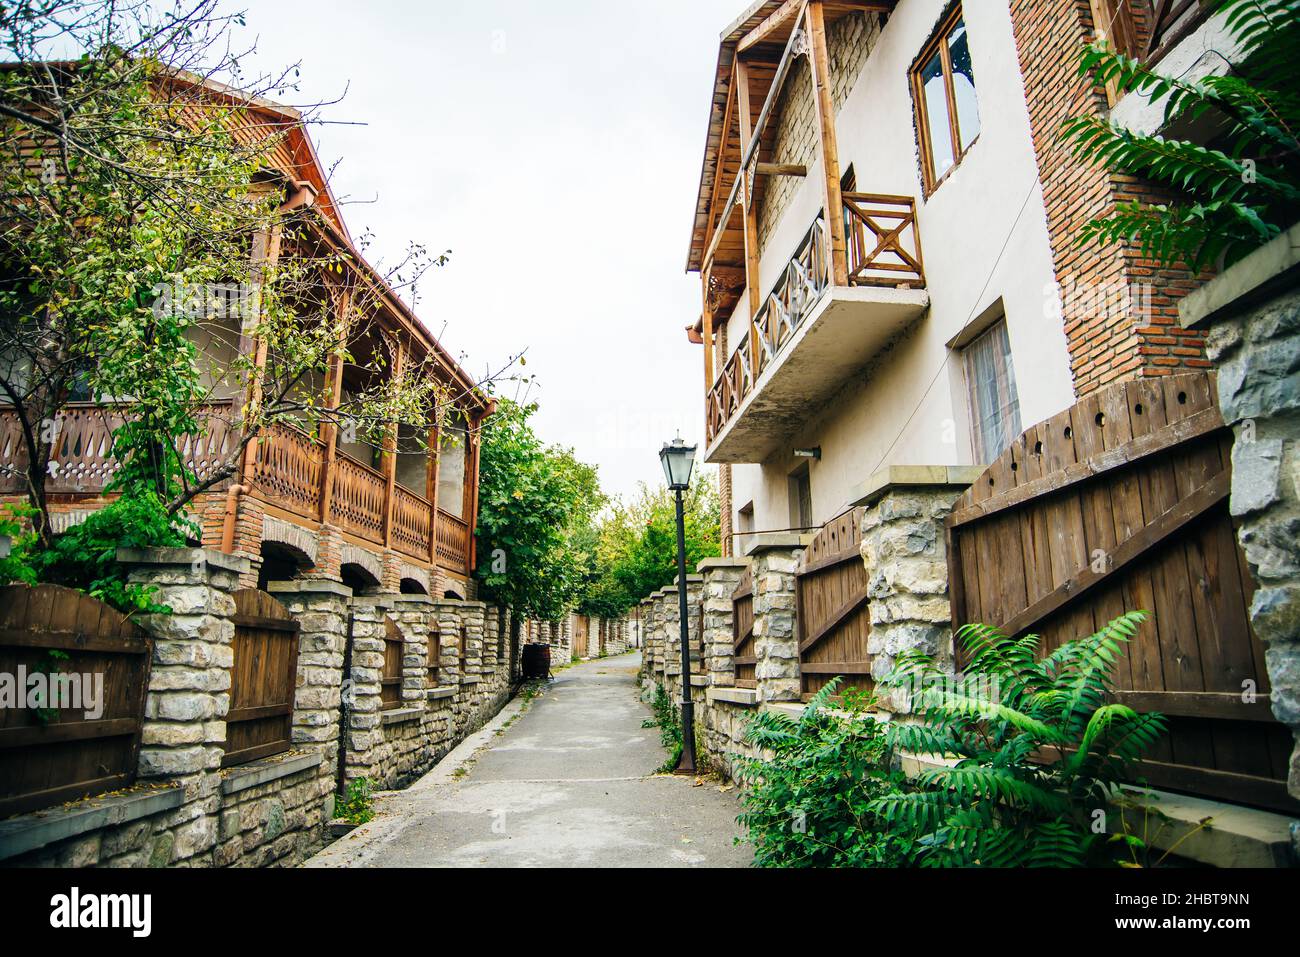 Vieille ville de Mtskheta, patrimoine de la Géorgie - septembre 2021.Photo de haute qualité Banque D'Images